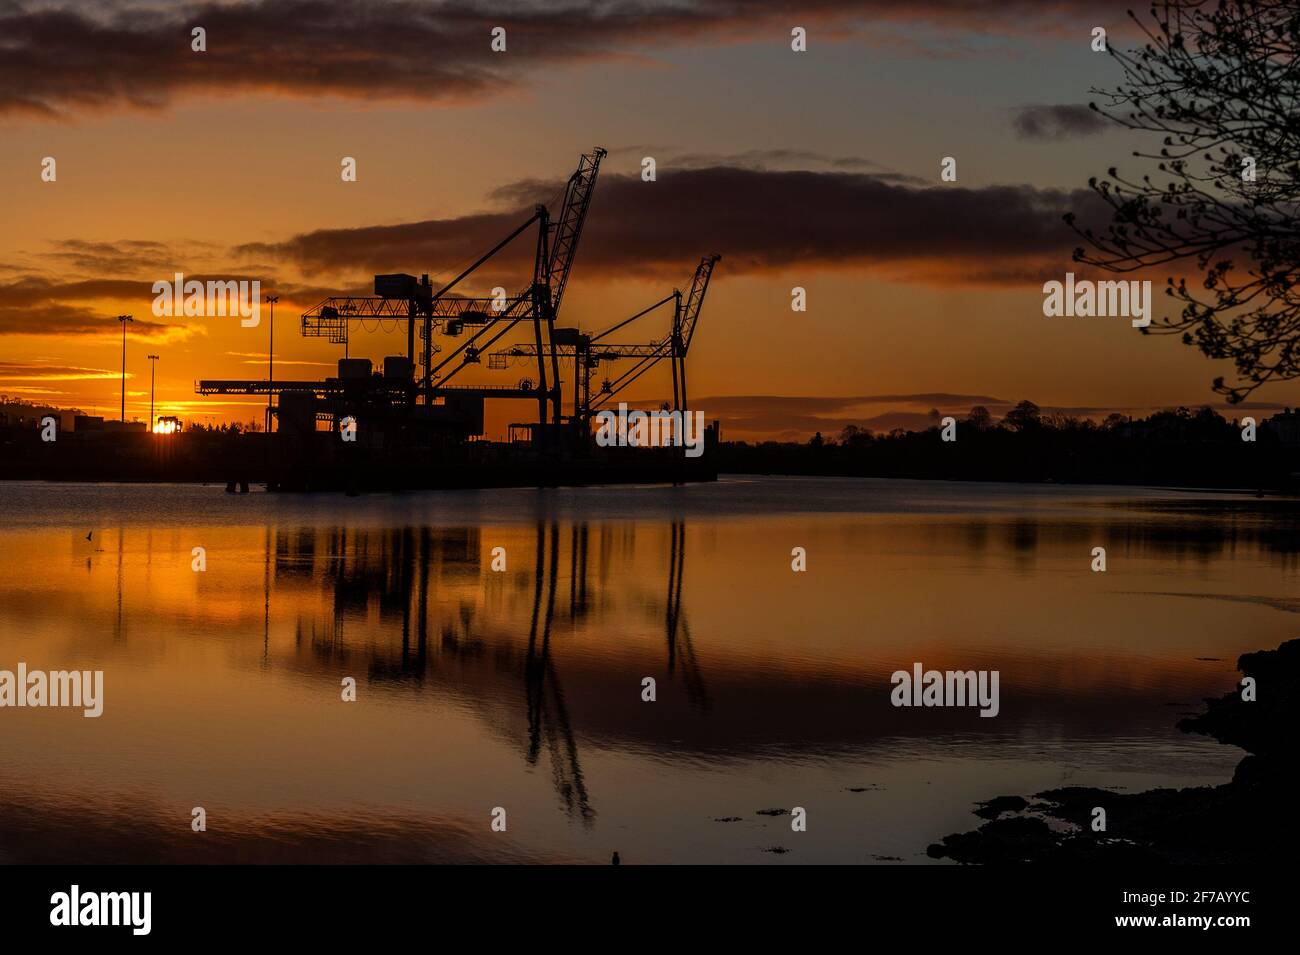 Cork, Irlande. 6 avril 2021. Le soleil se lève au-dessus des quais de Tivoli dans le port de Cork comme prélude à une journée de soleil avec des sommets de 5 à 7C. Crédit : AG News/Alay Live News Banque D'Images